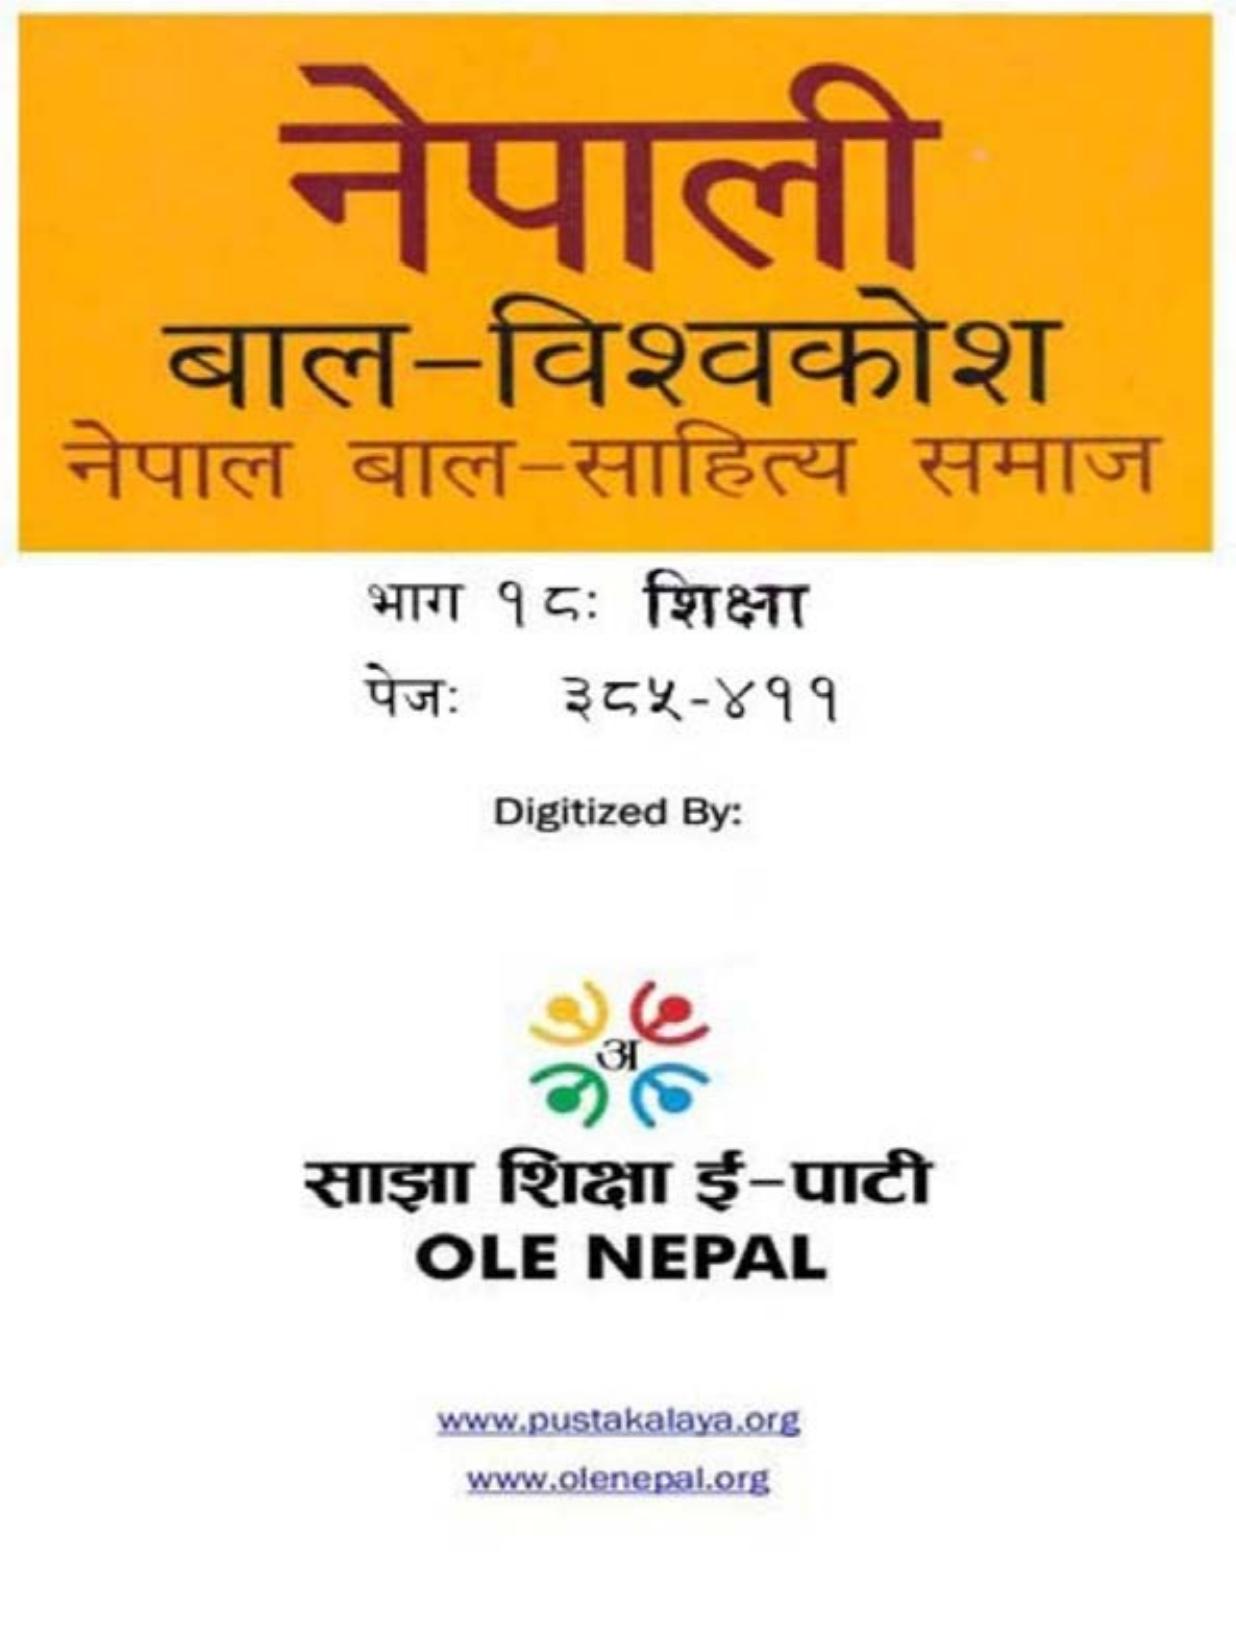 नेपाली बाल-विश्वकोश १८: शिक्षा